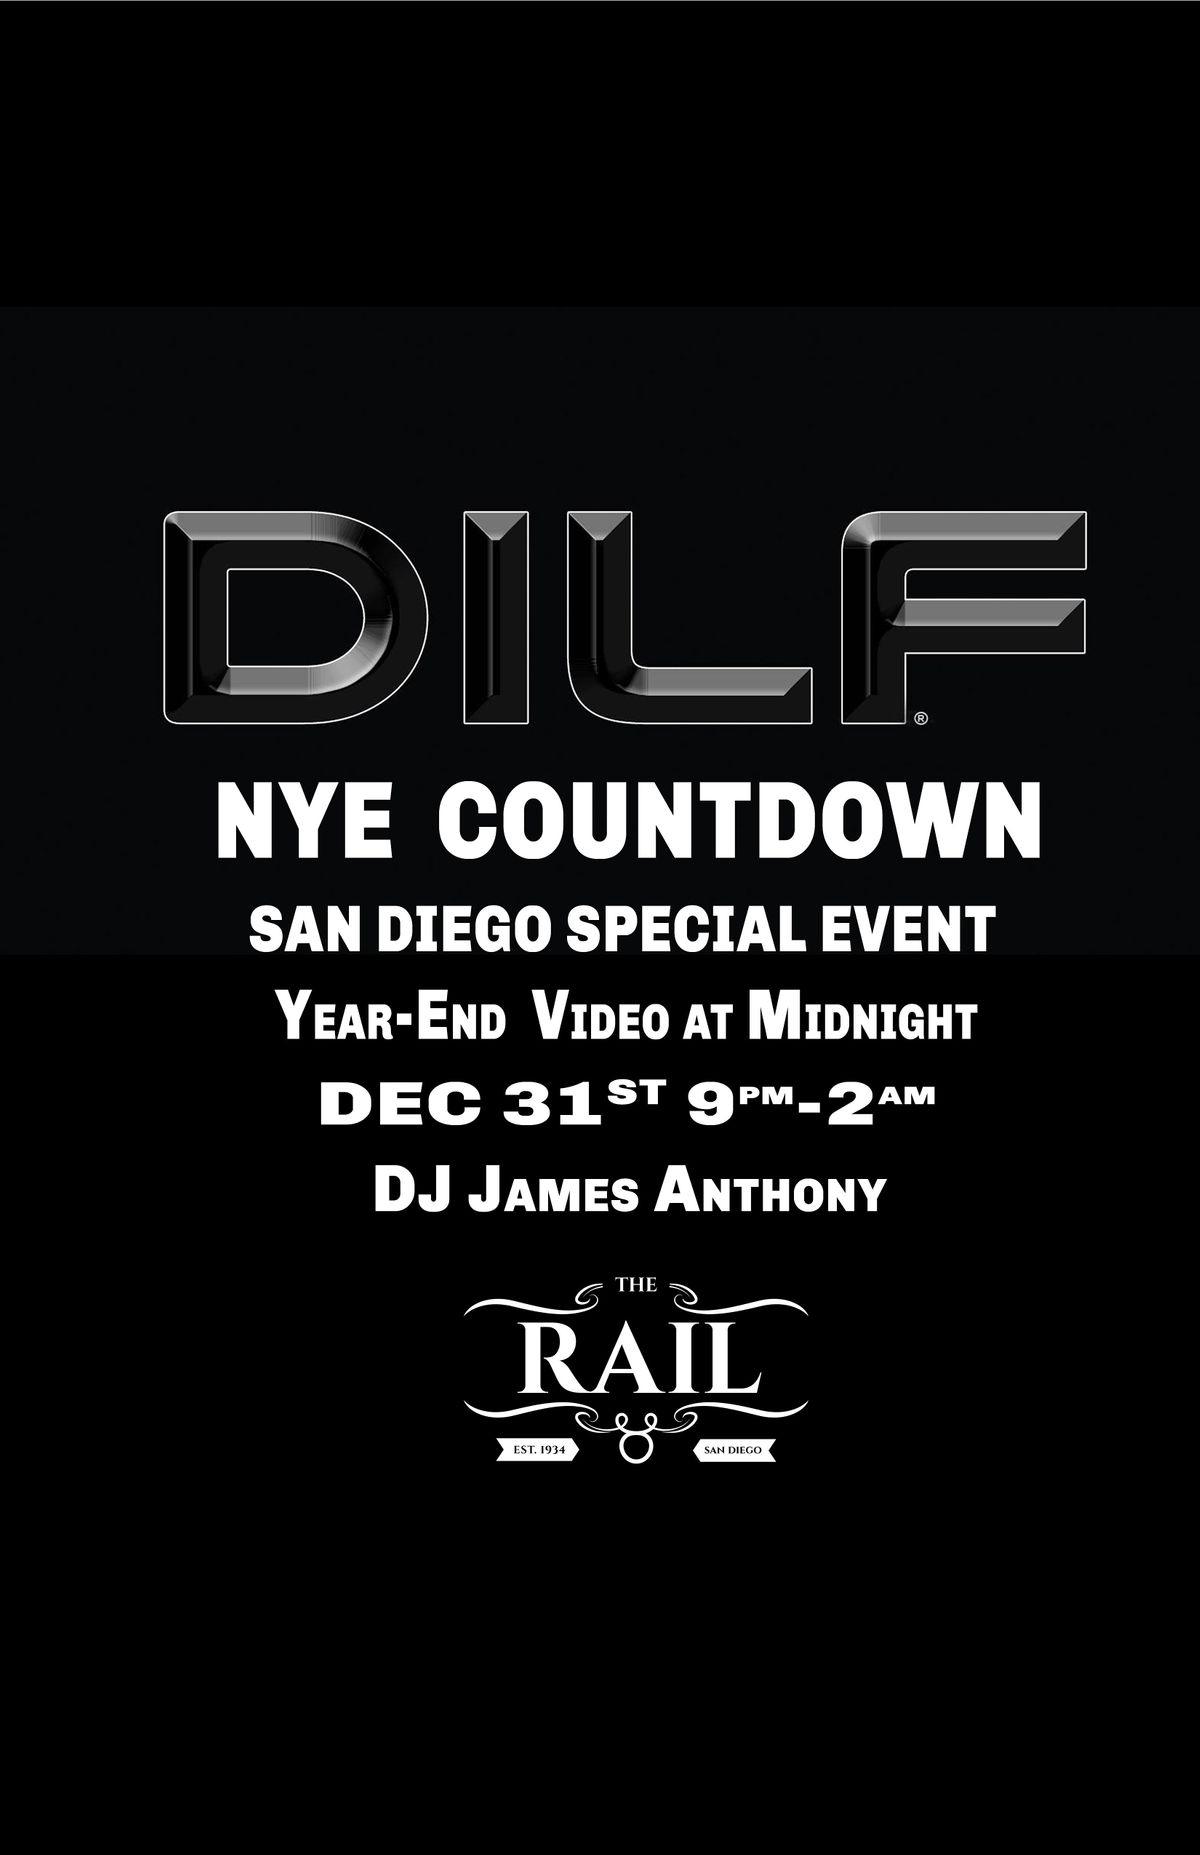 DILF San Diego NYE "COUNTDOWN" by Joe Whitaker Presents The Rail, San